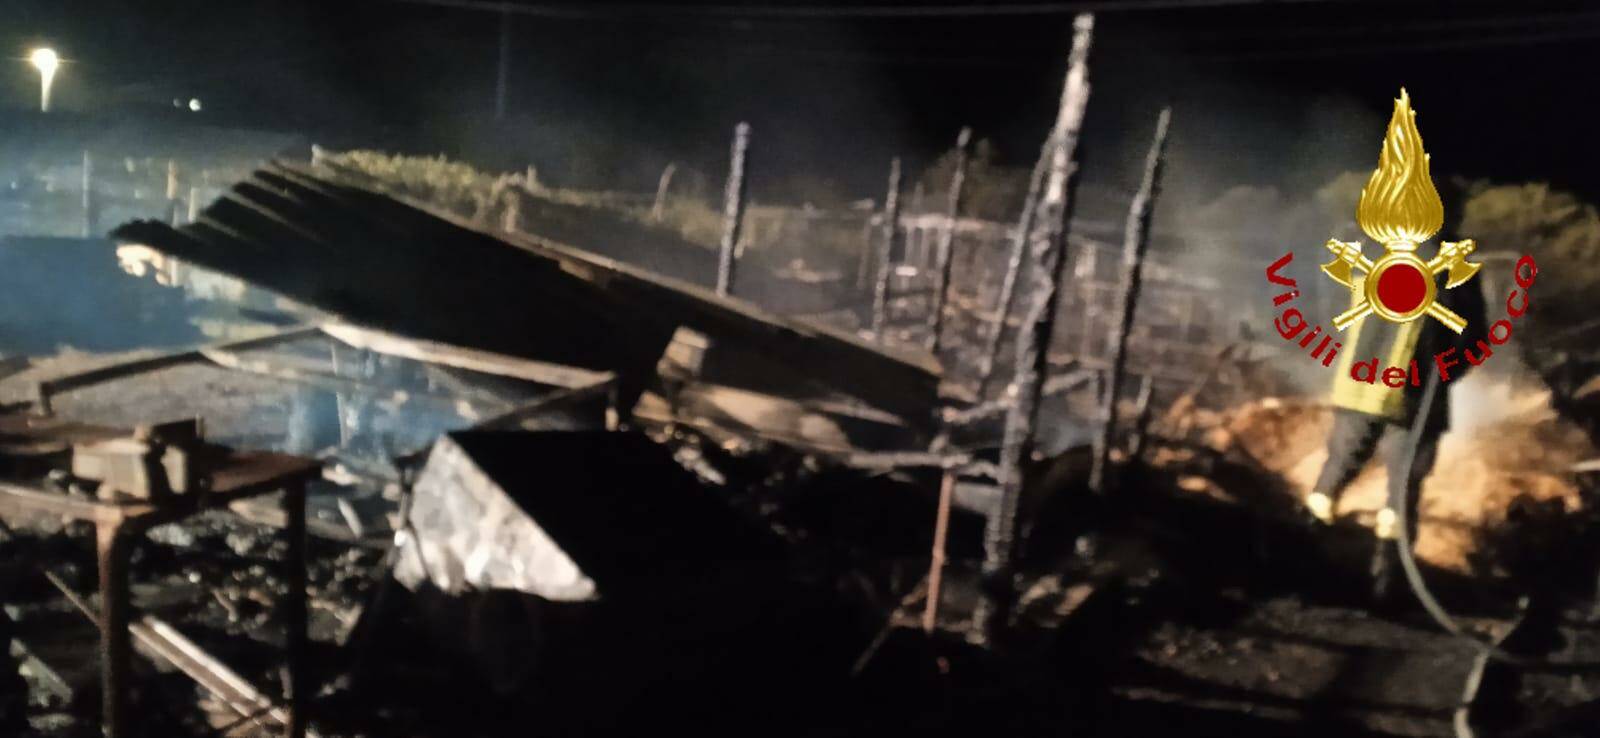 Montalbano Jonico, fiamme intorno a fattoria: morti animali